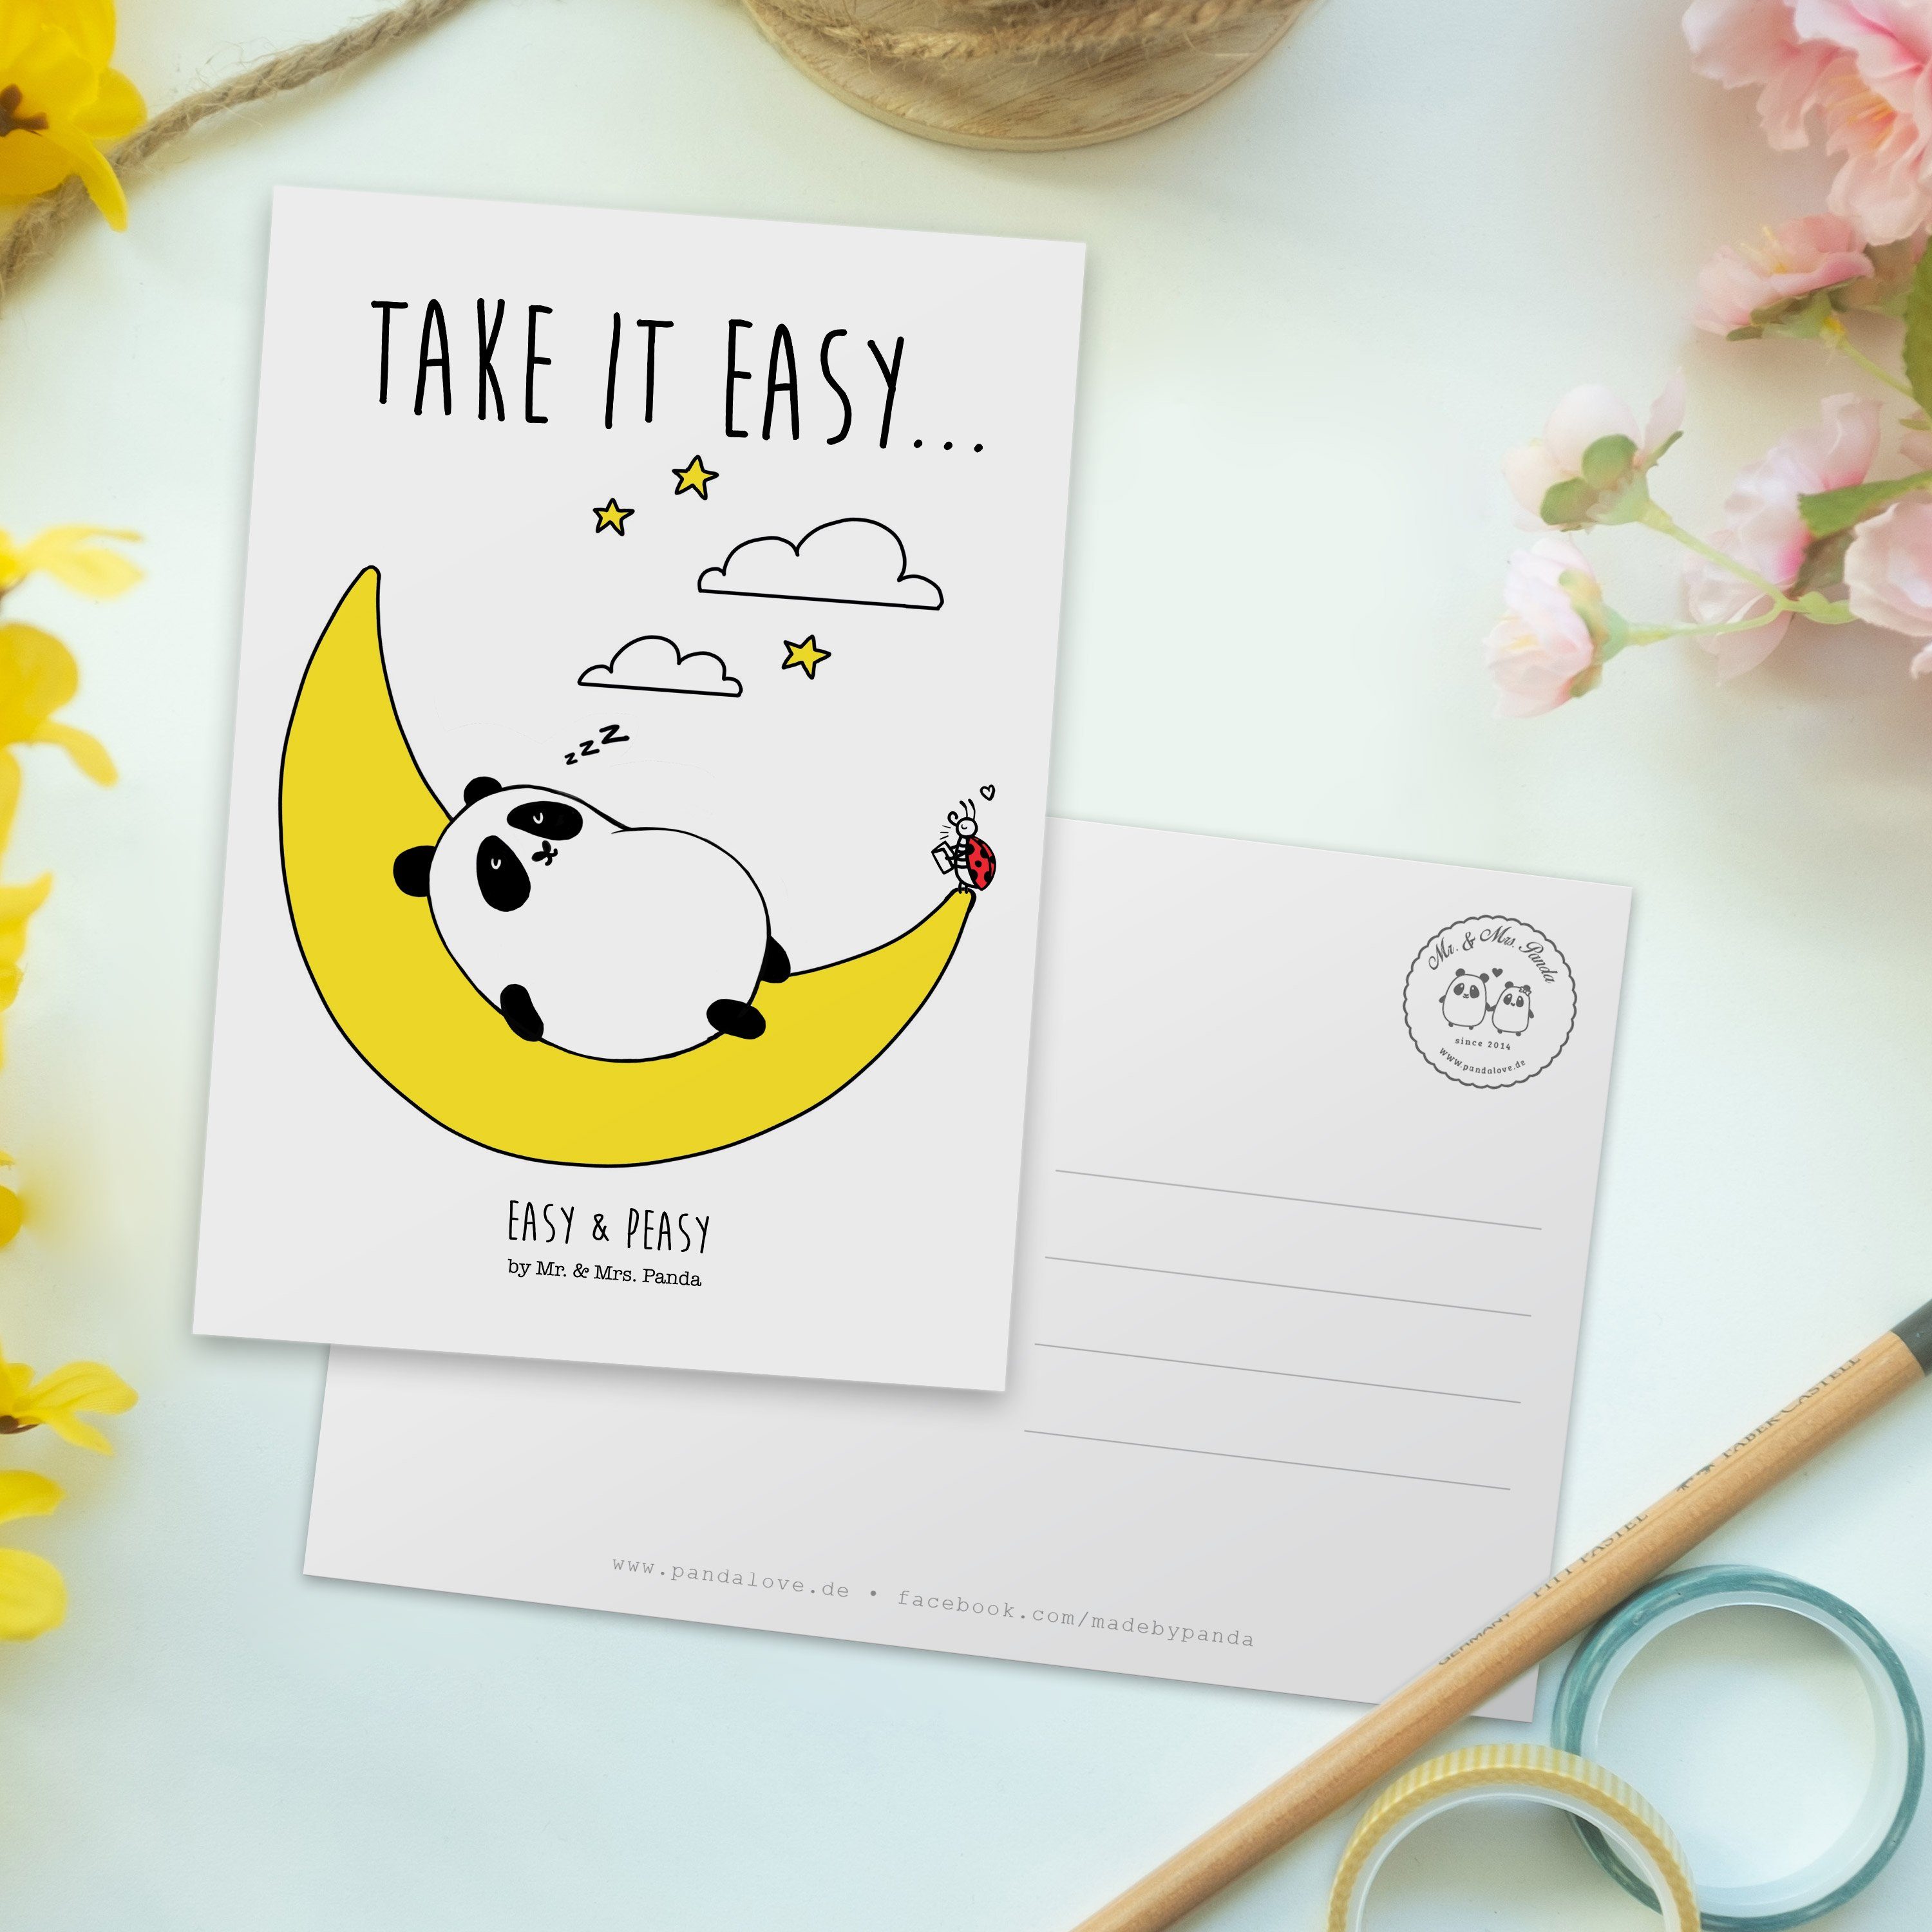 Mr. & Mrs. Postkarte Panda it Easy & Take - Easy Geburtstagska Peasy - Grußkarte, Geschenk, Weiß